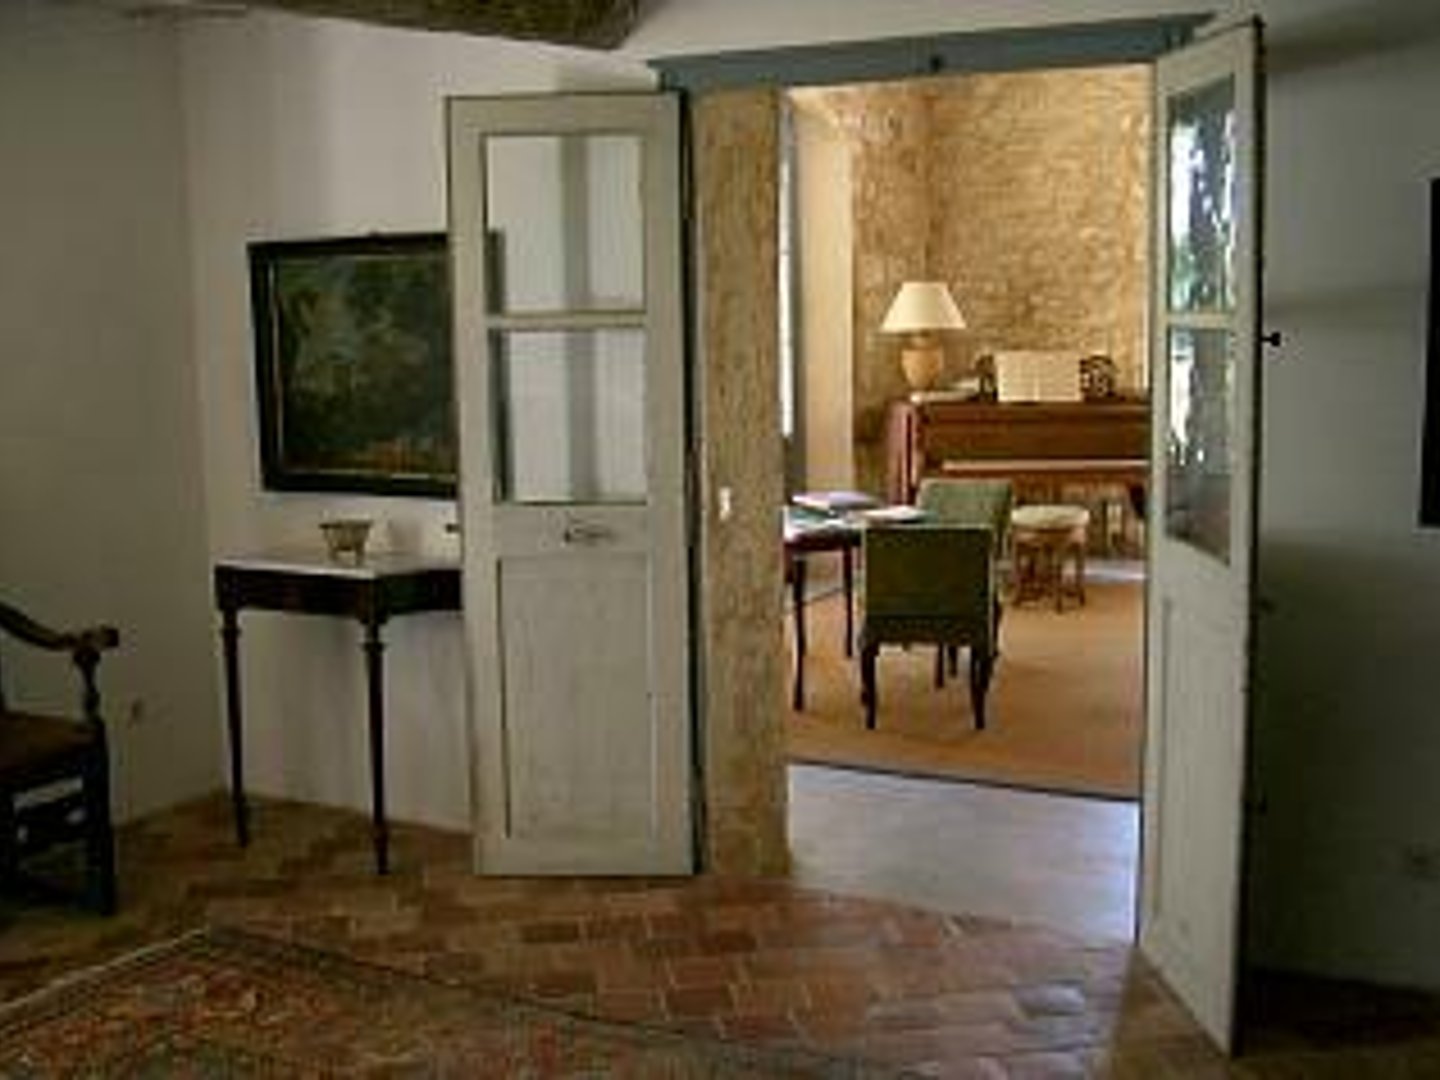 41 - Chez Martine: Villa: Interior